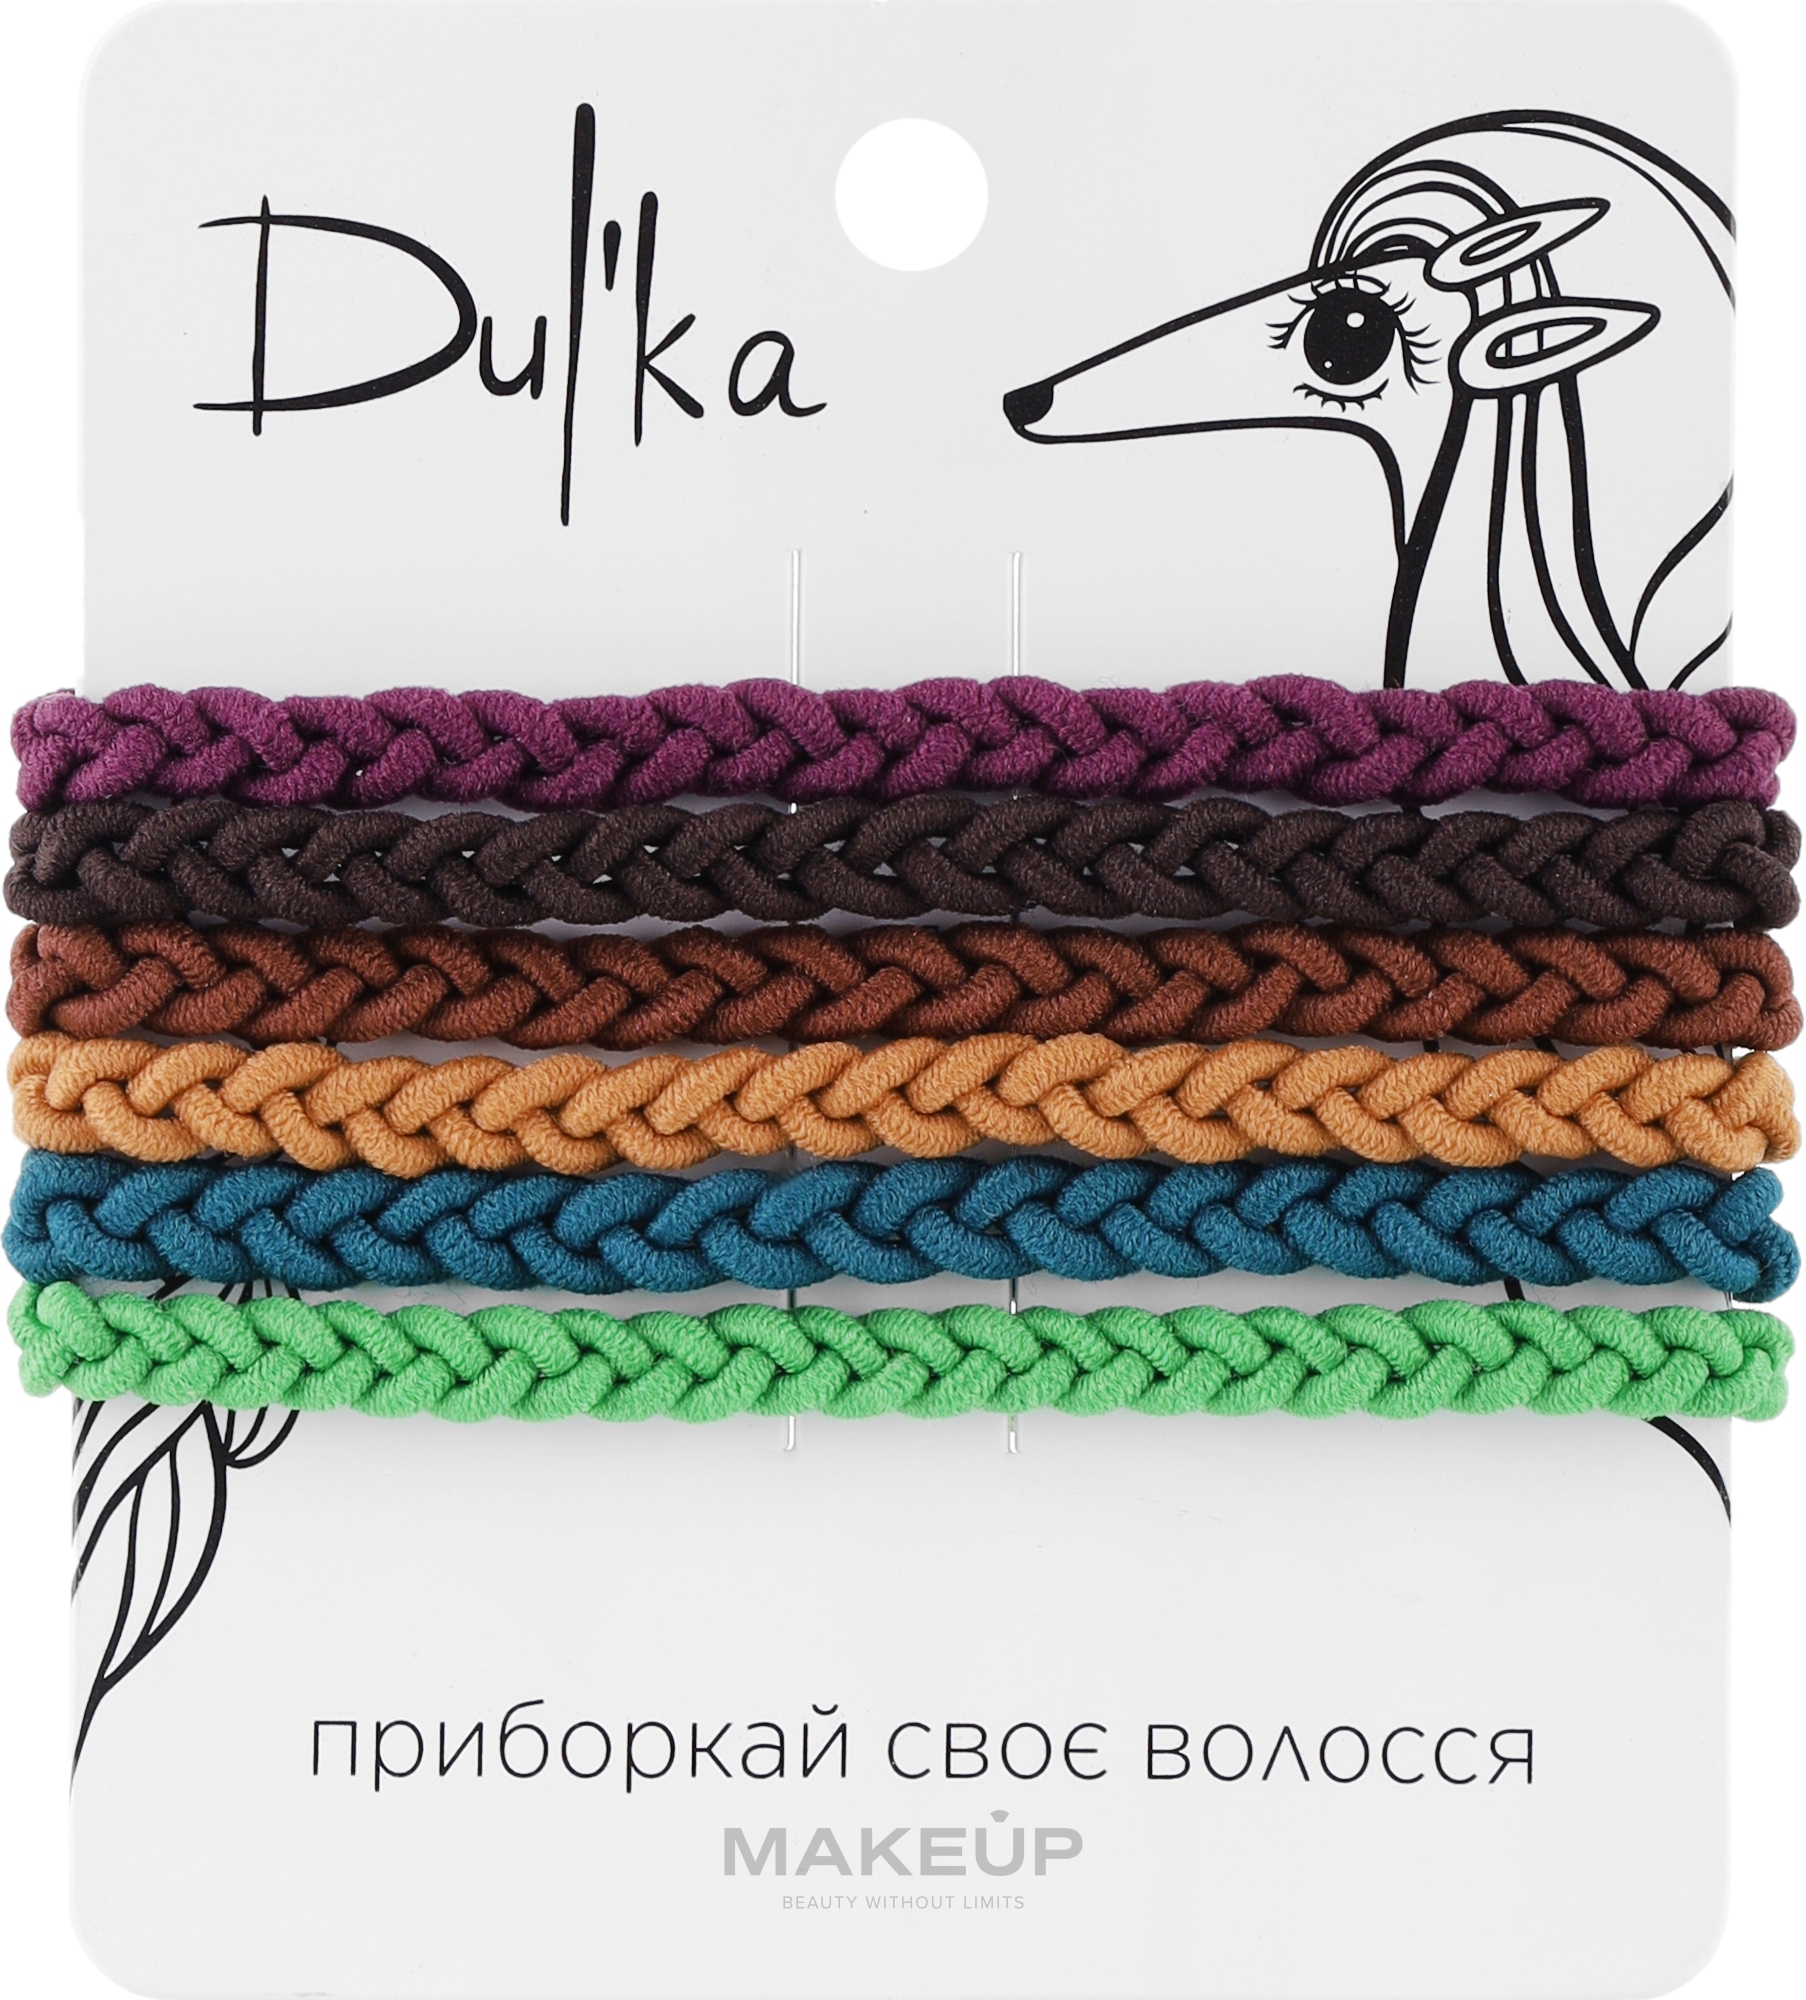 Набор разноцветных резинок для волос UH717721, 6 шт - Dulka  — фото 6шт